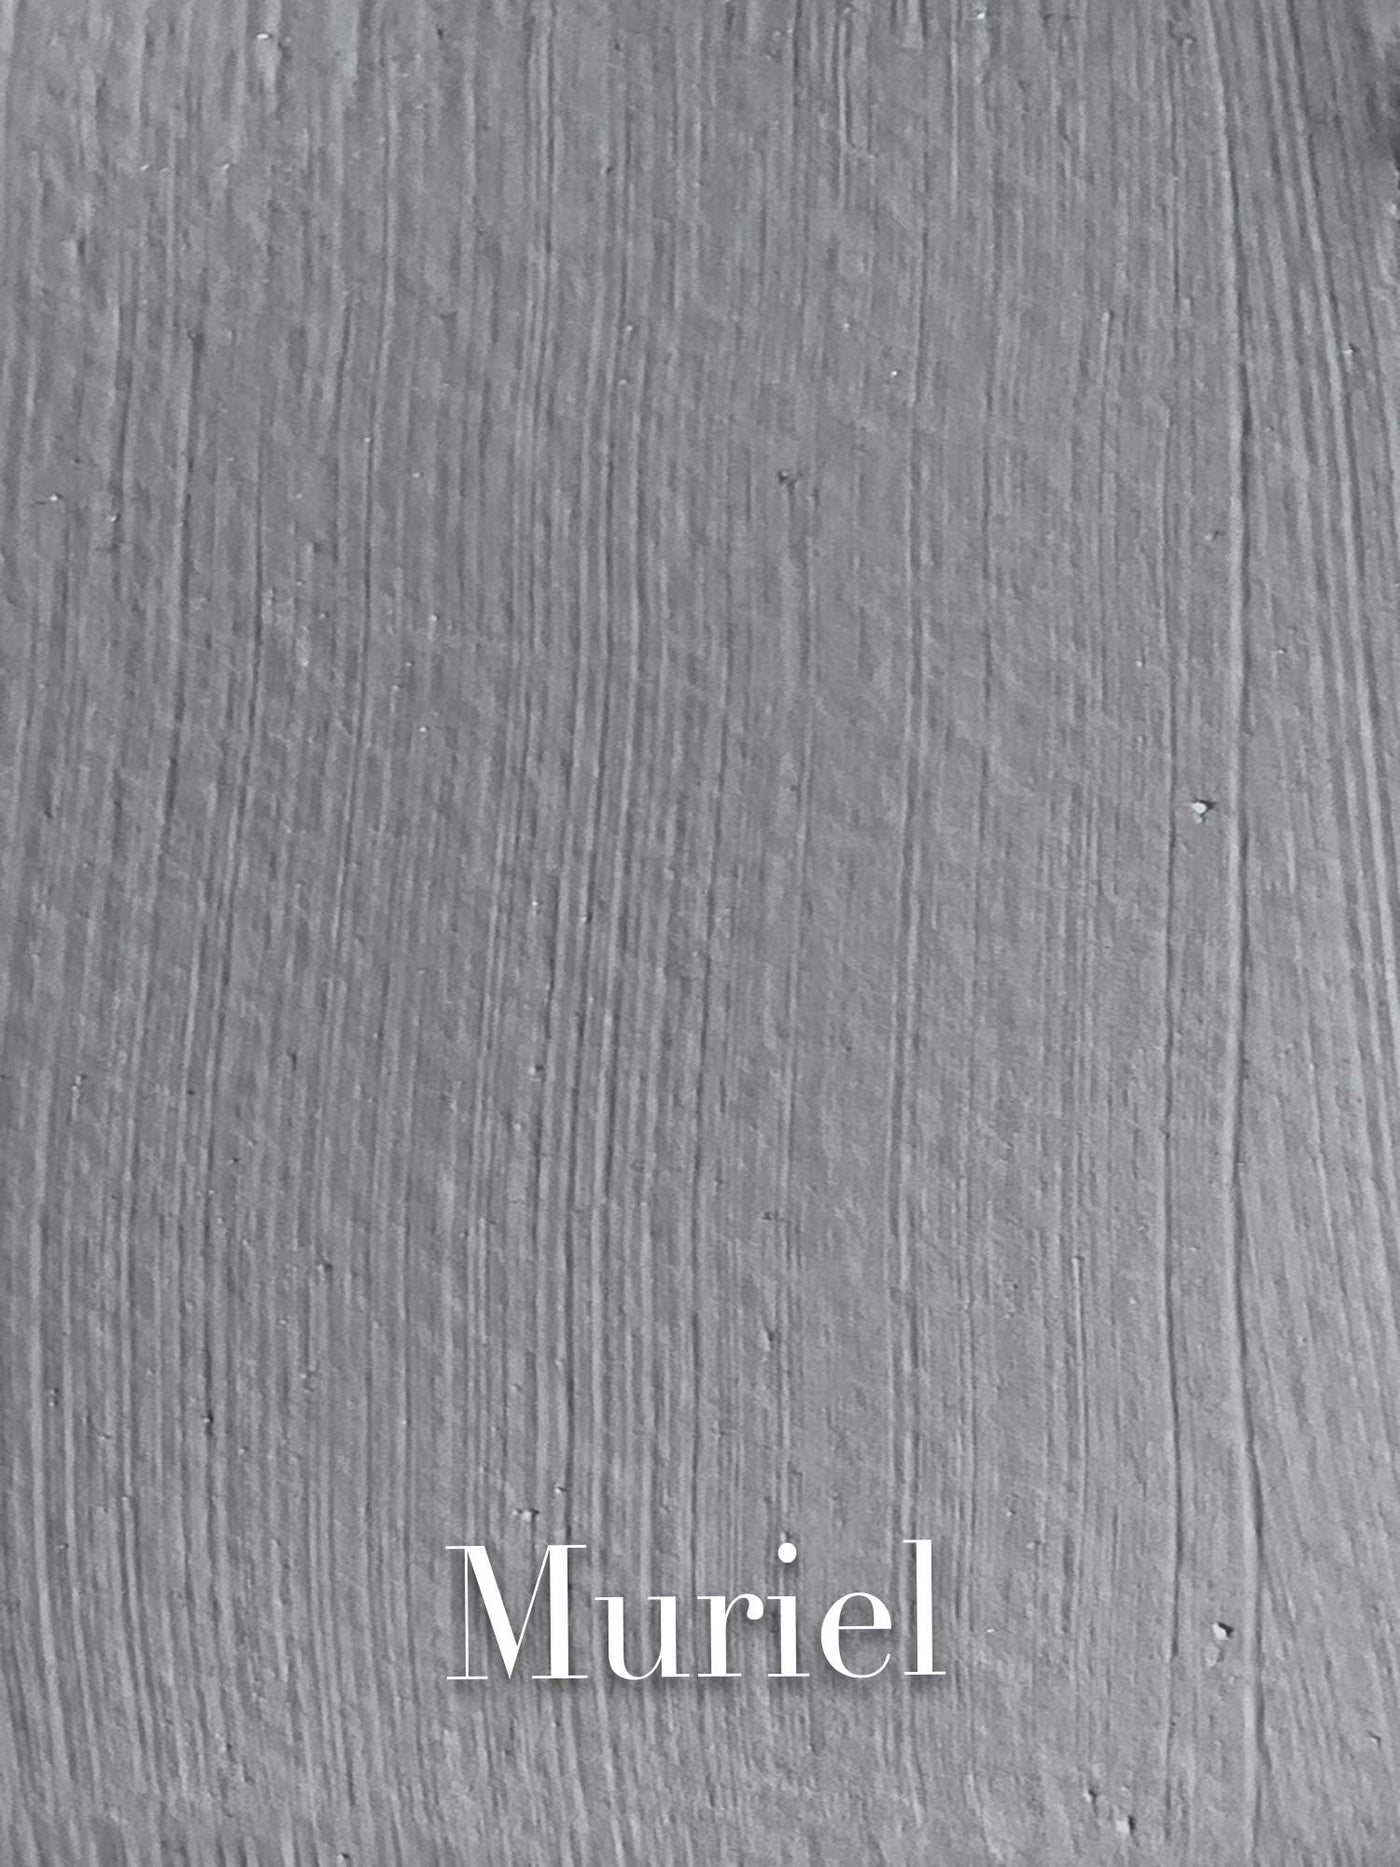 Muriel - Old Packaging